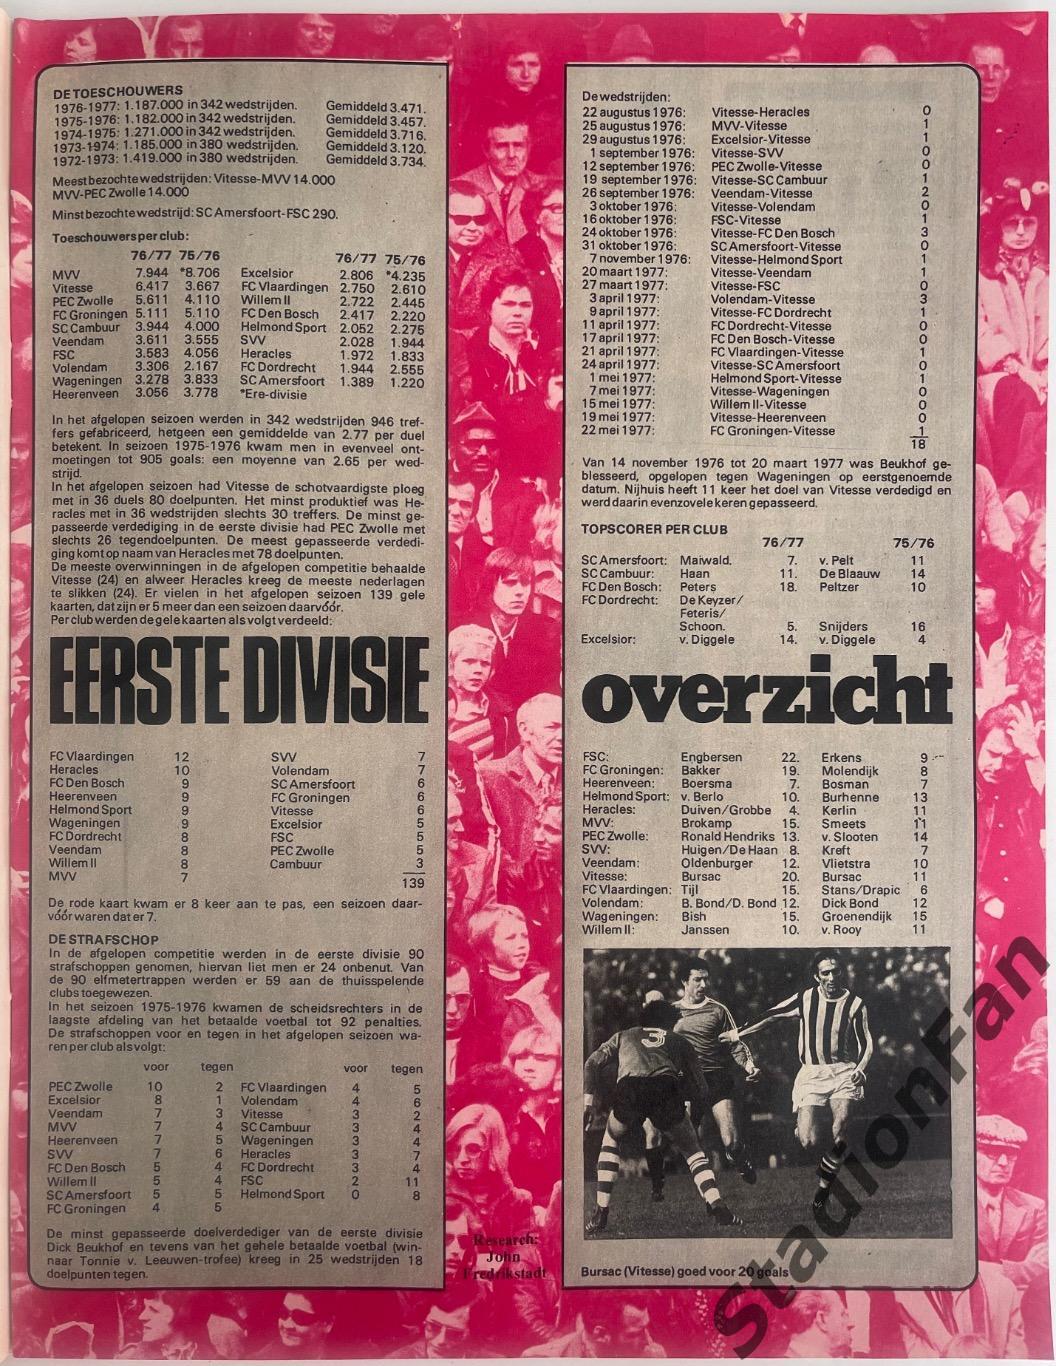 Журнал Voetbal nr.24 - 1977 год. 2